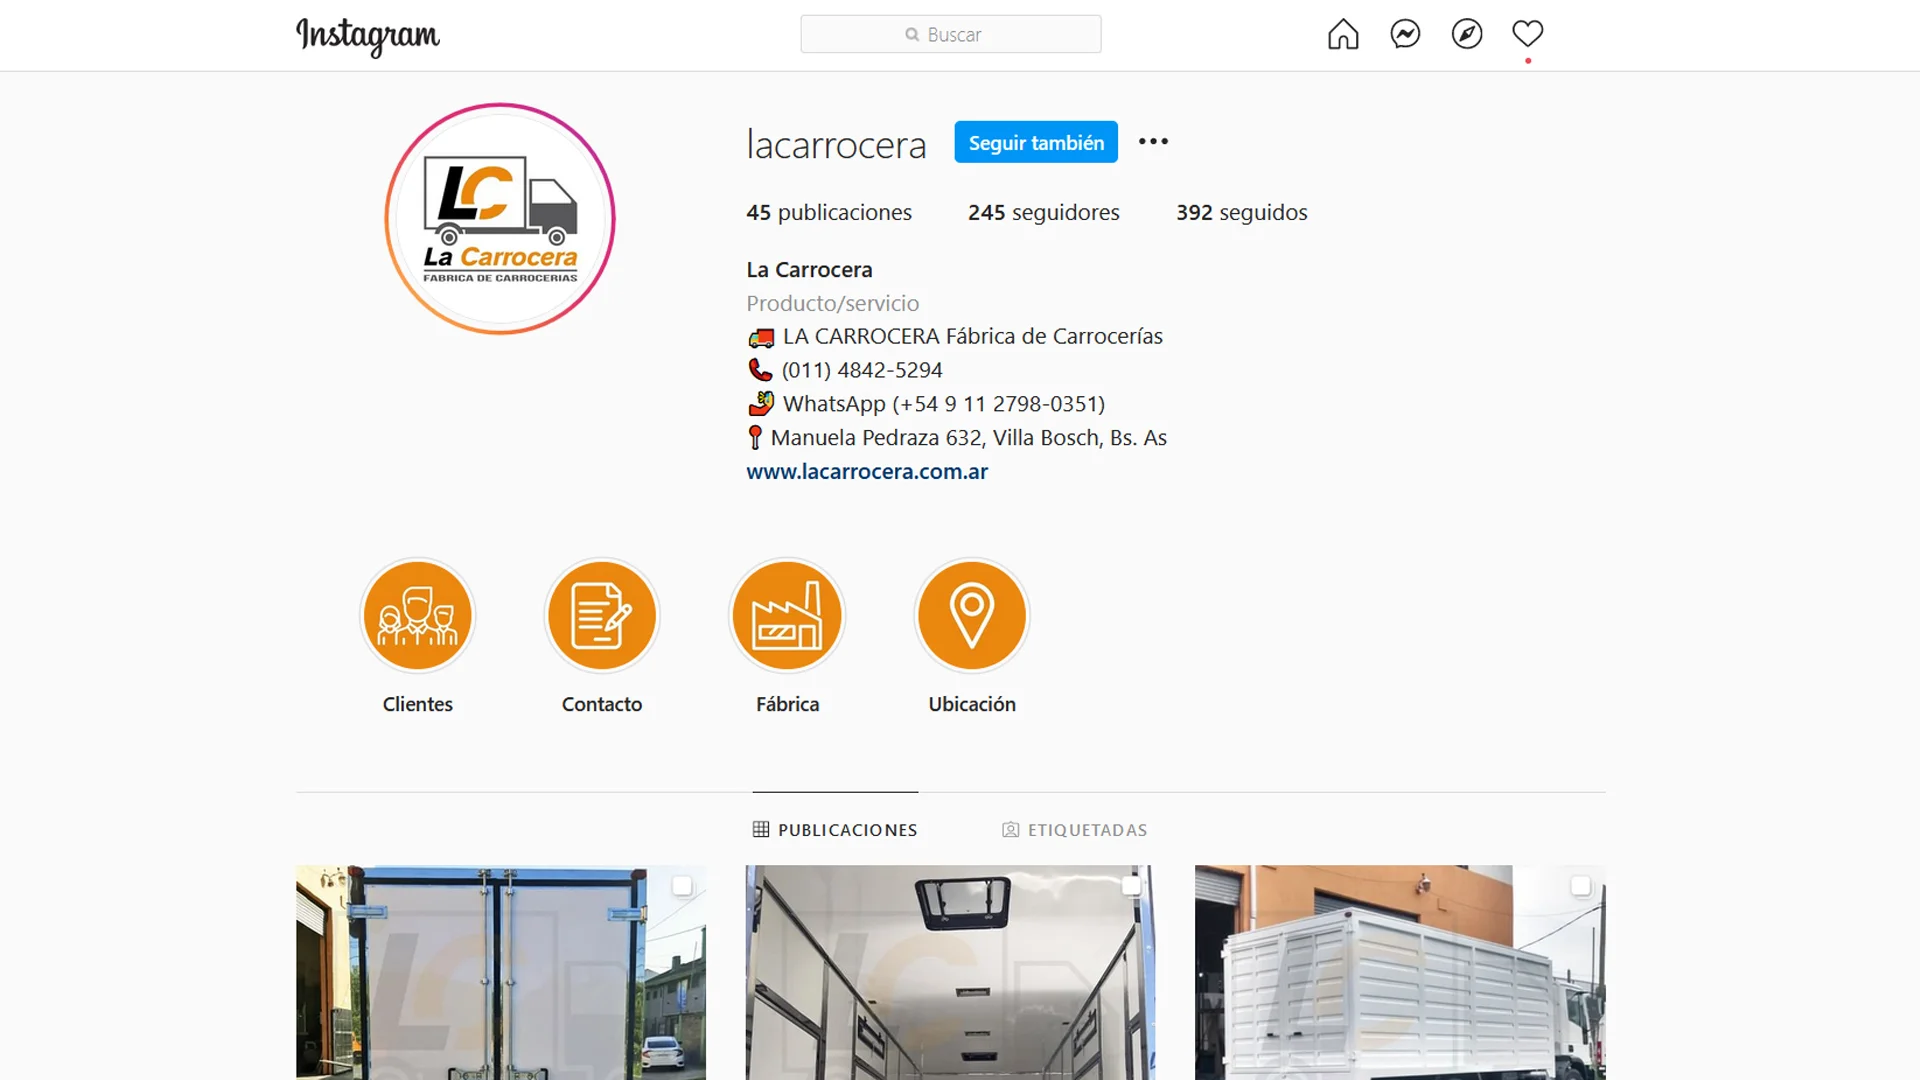 LA CARROCERA | Fábrica de Carrocerías - Instagram